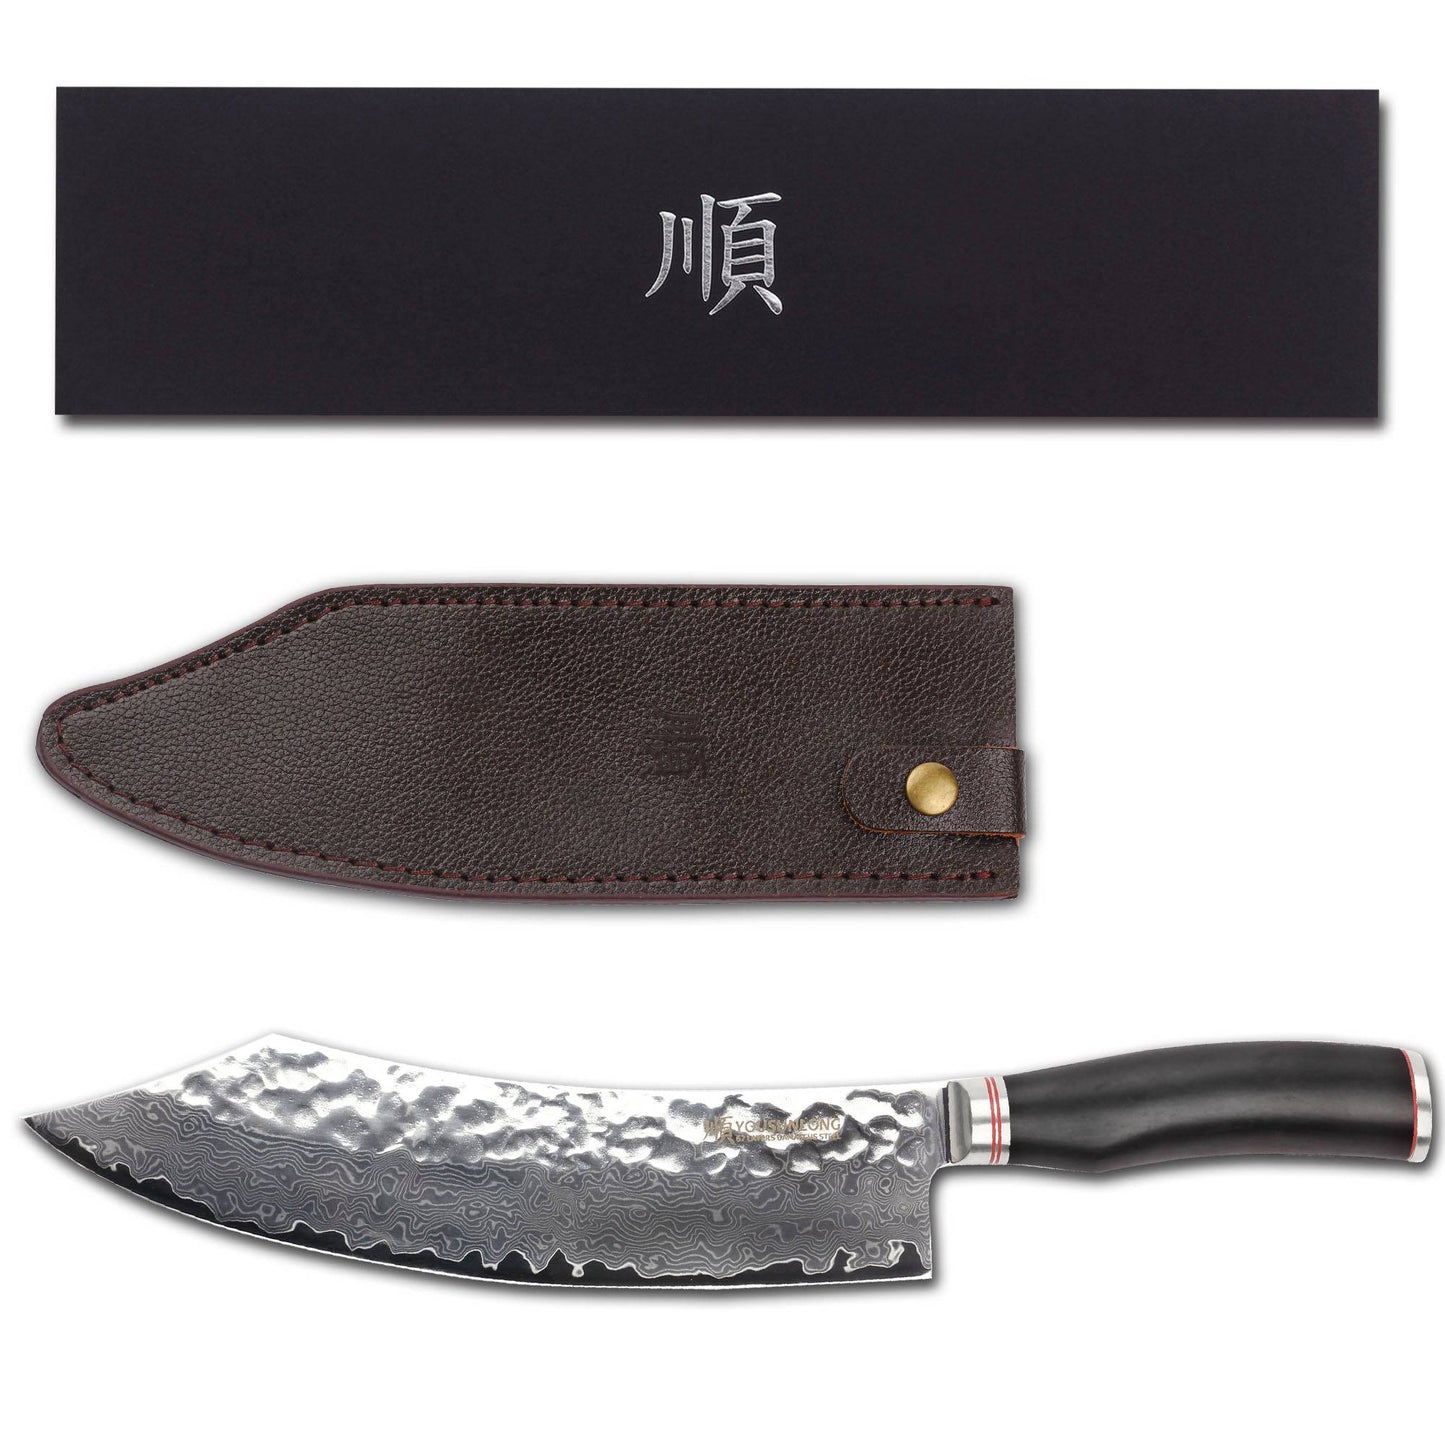 Tokosu VG10 Damascus Steel Japanese Hammered Damascus Steel Ebony Wood Handled Chef Knife